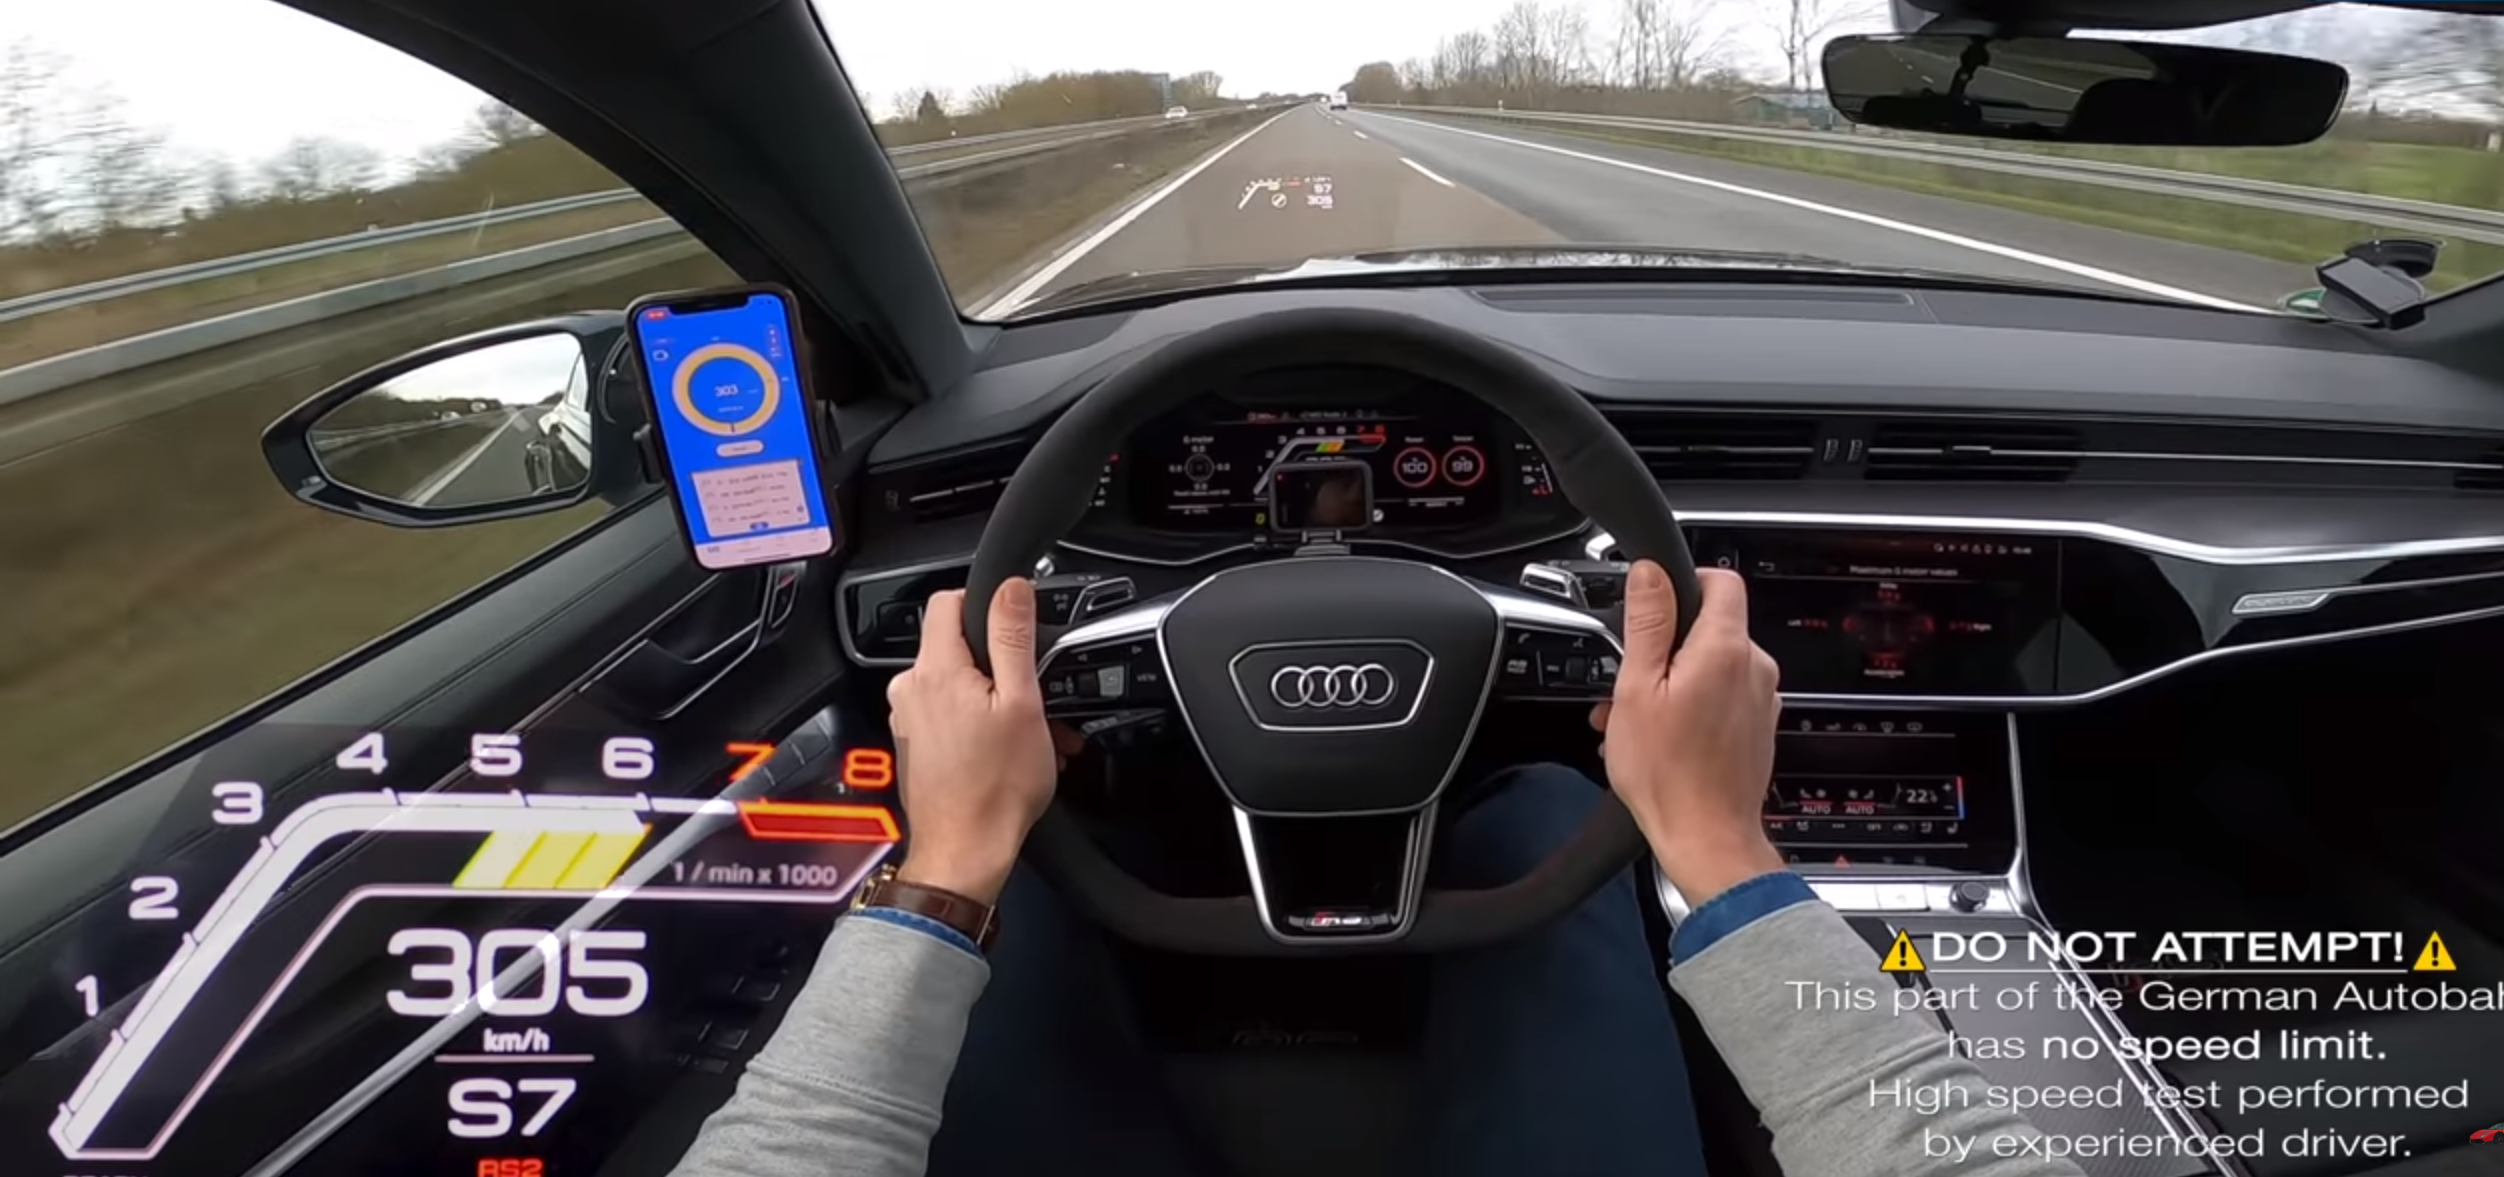 El Nuevo Audi Rs 6 Presume De Velocidad Punta En La Autobahn